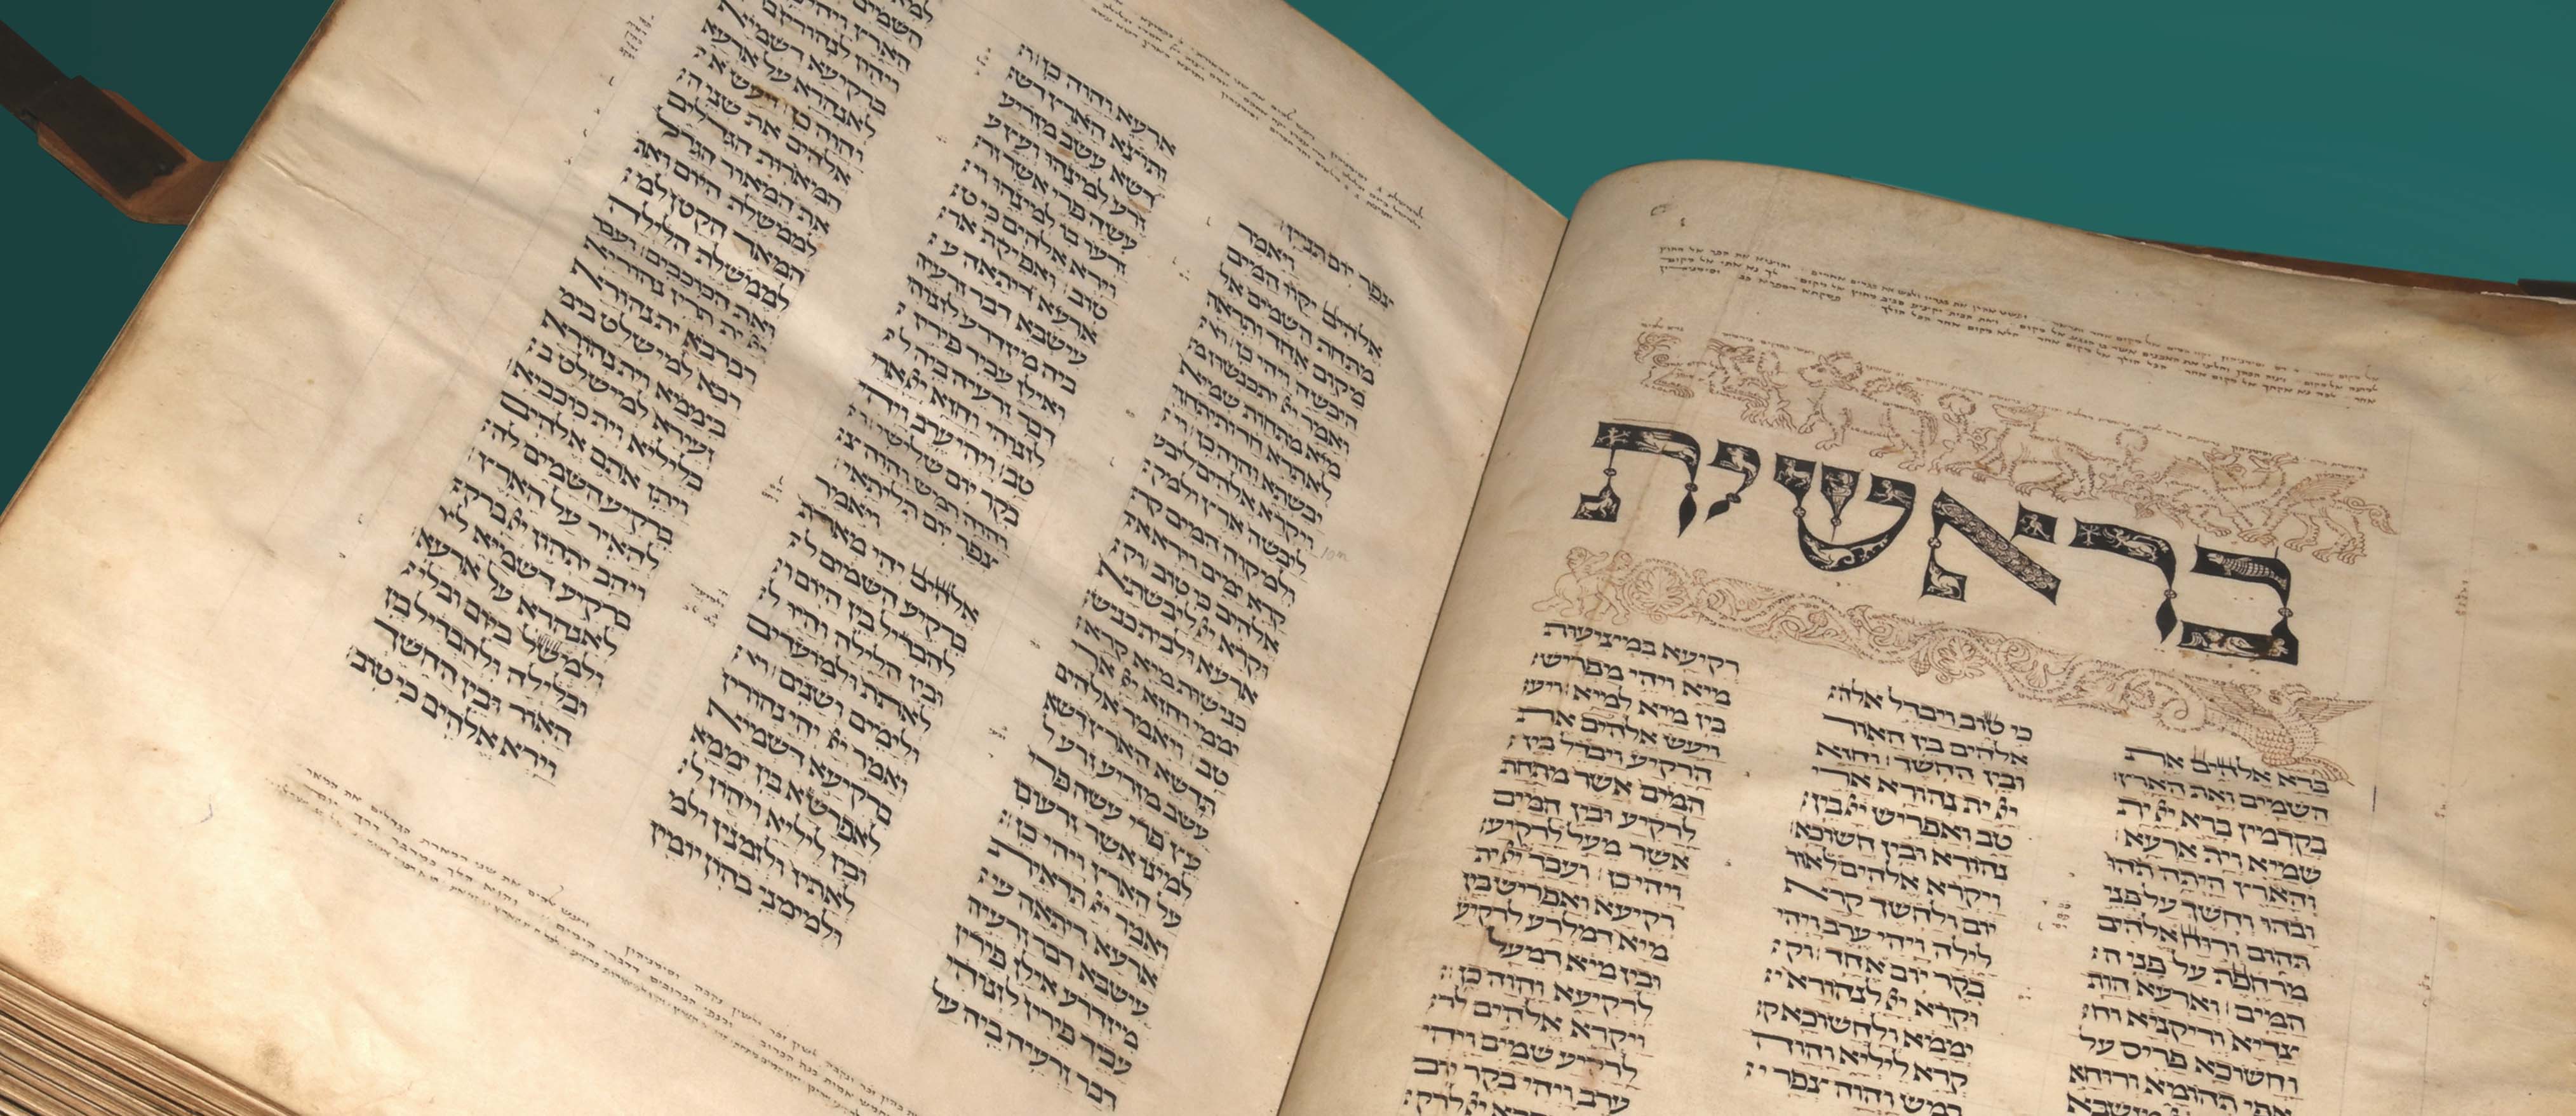 Bildausschnitt einer Handschrift mit hebräischen Schriftzeichen